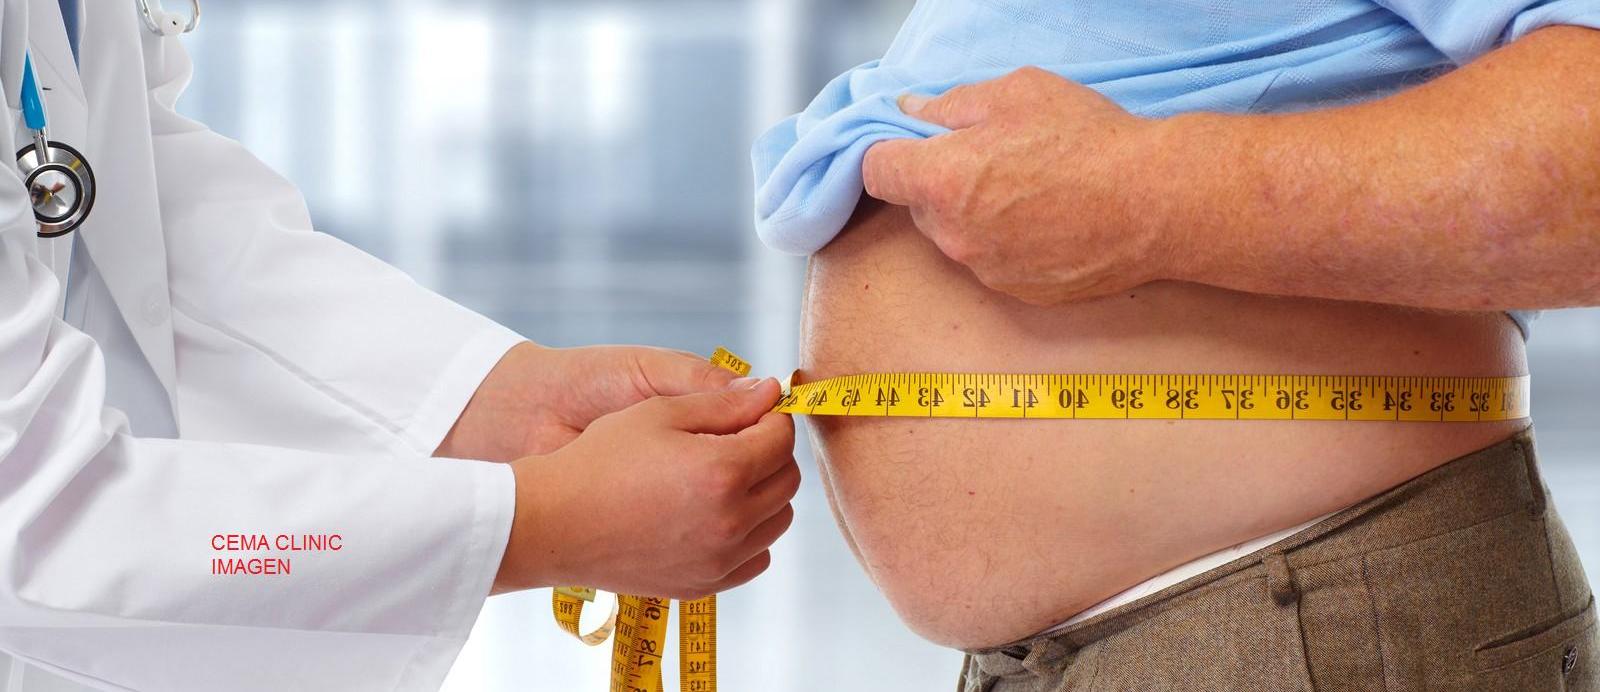 dietista nutricionista -obesidad adelgazamiento